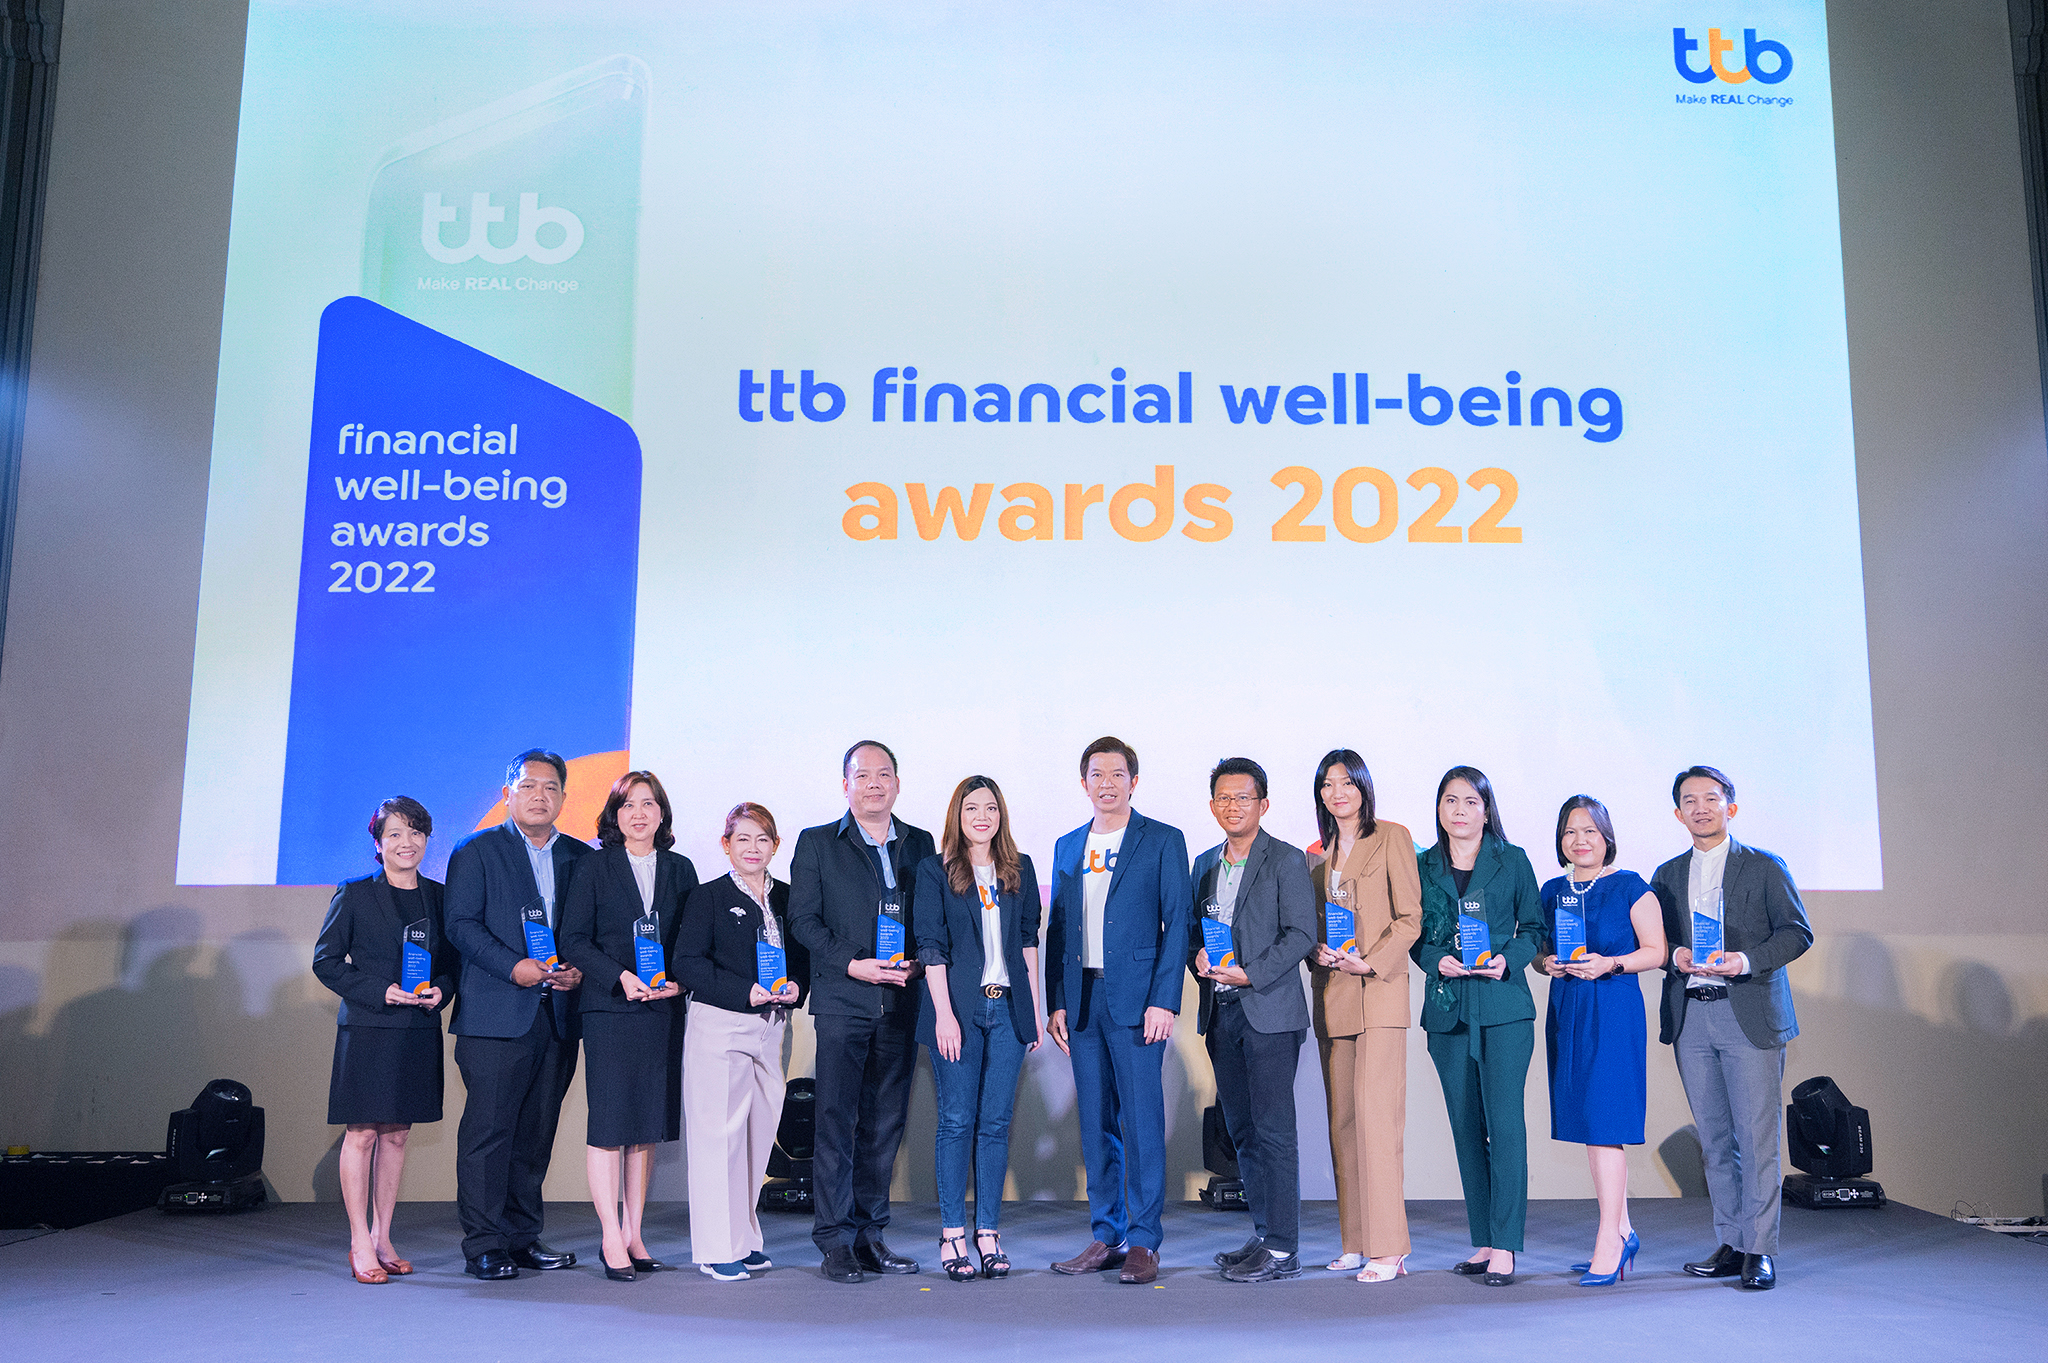 ทีเอ็มบีธนชาต มอบรางวัล ‘ttb financial well-being awards’ ให้ 10 องค์กรชั้นนำดีเด่นที่ยกระดับสวัสดิการให้พนักงานในองค์กรมีชีวิตทางการเงินดีขึ้นรอบด้าน